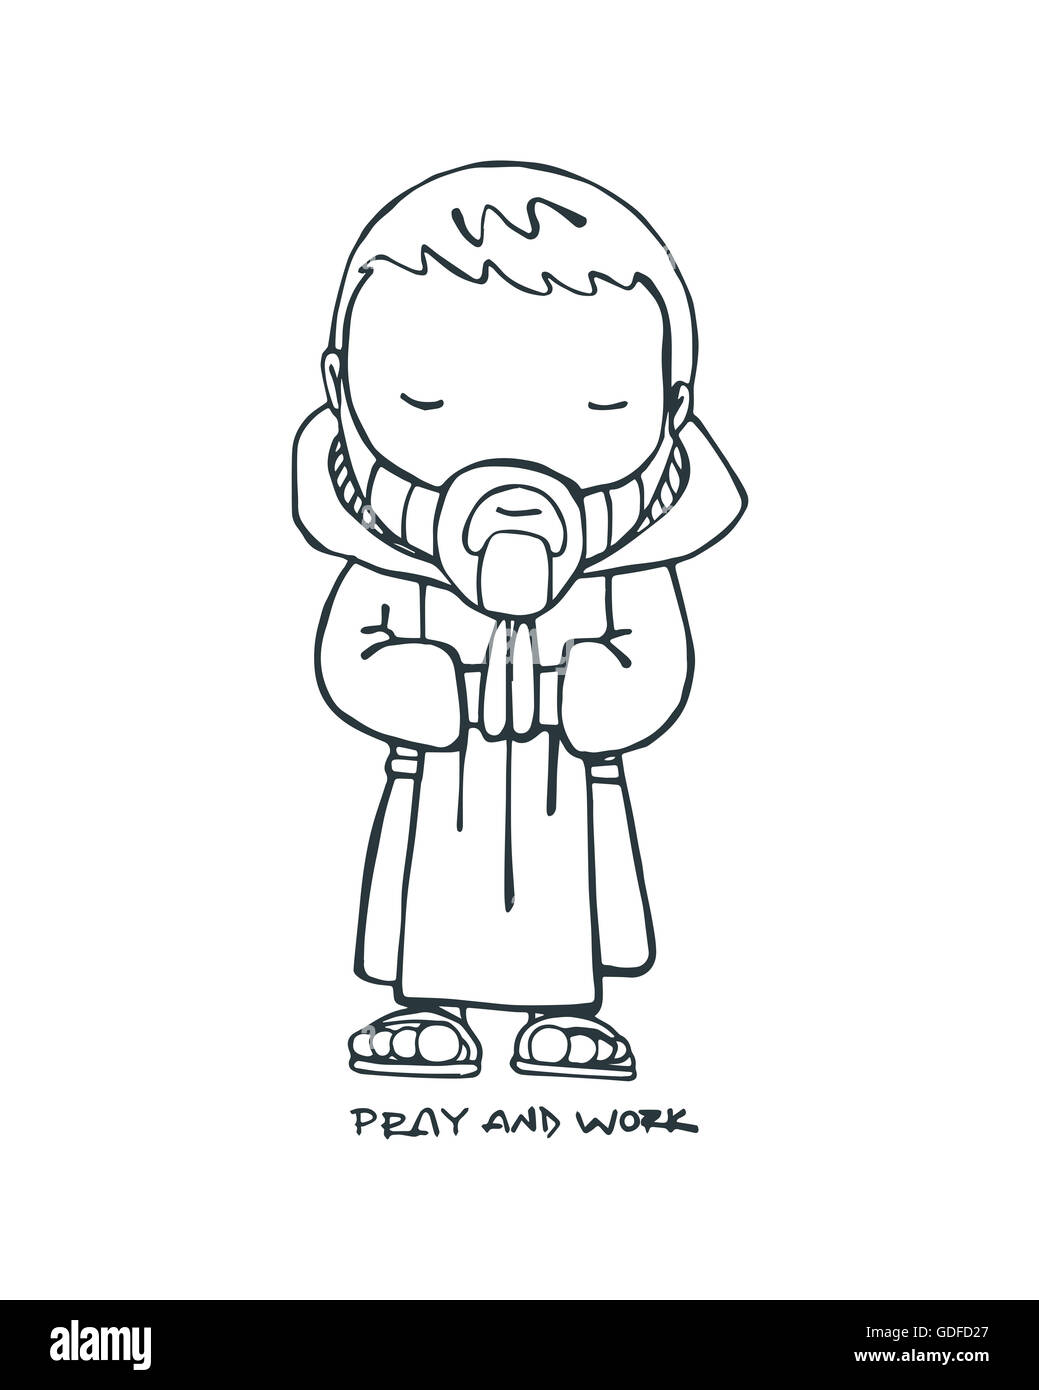 Disegnato a mano o illustrazione di disegno di un monaco benedettino e la frase: pregare e lavorare Foto Stock